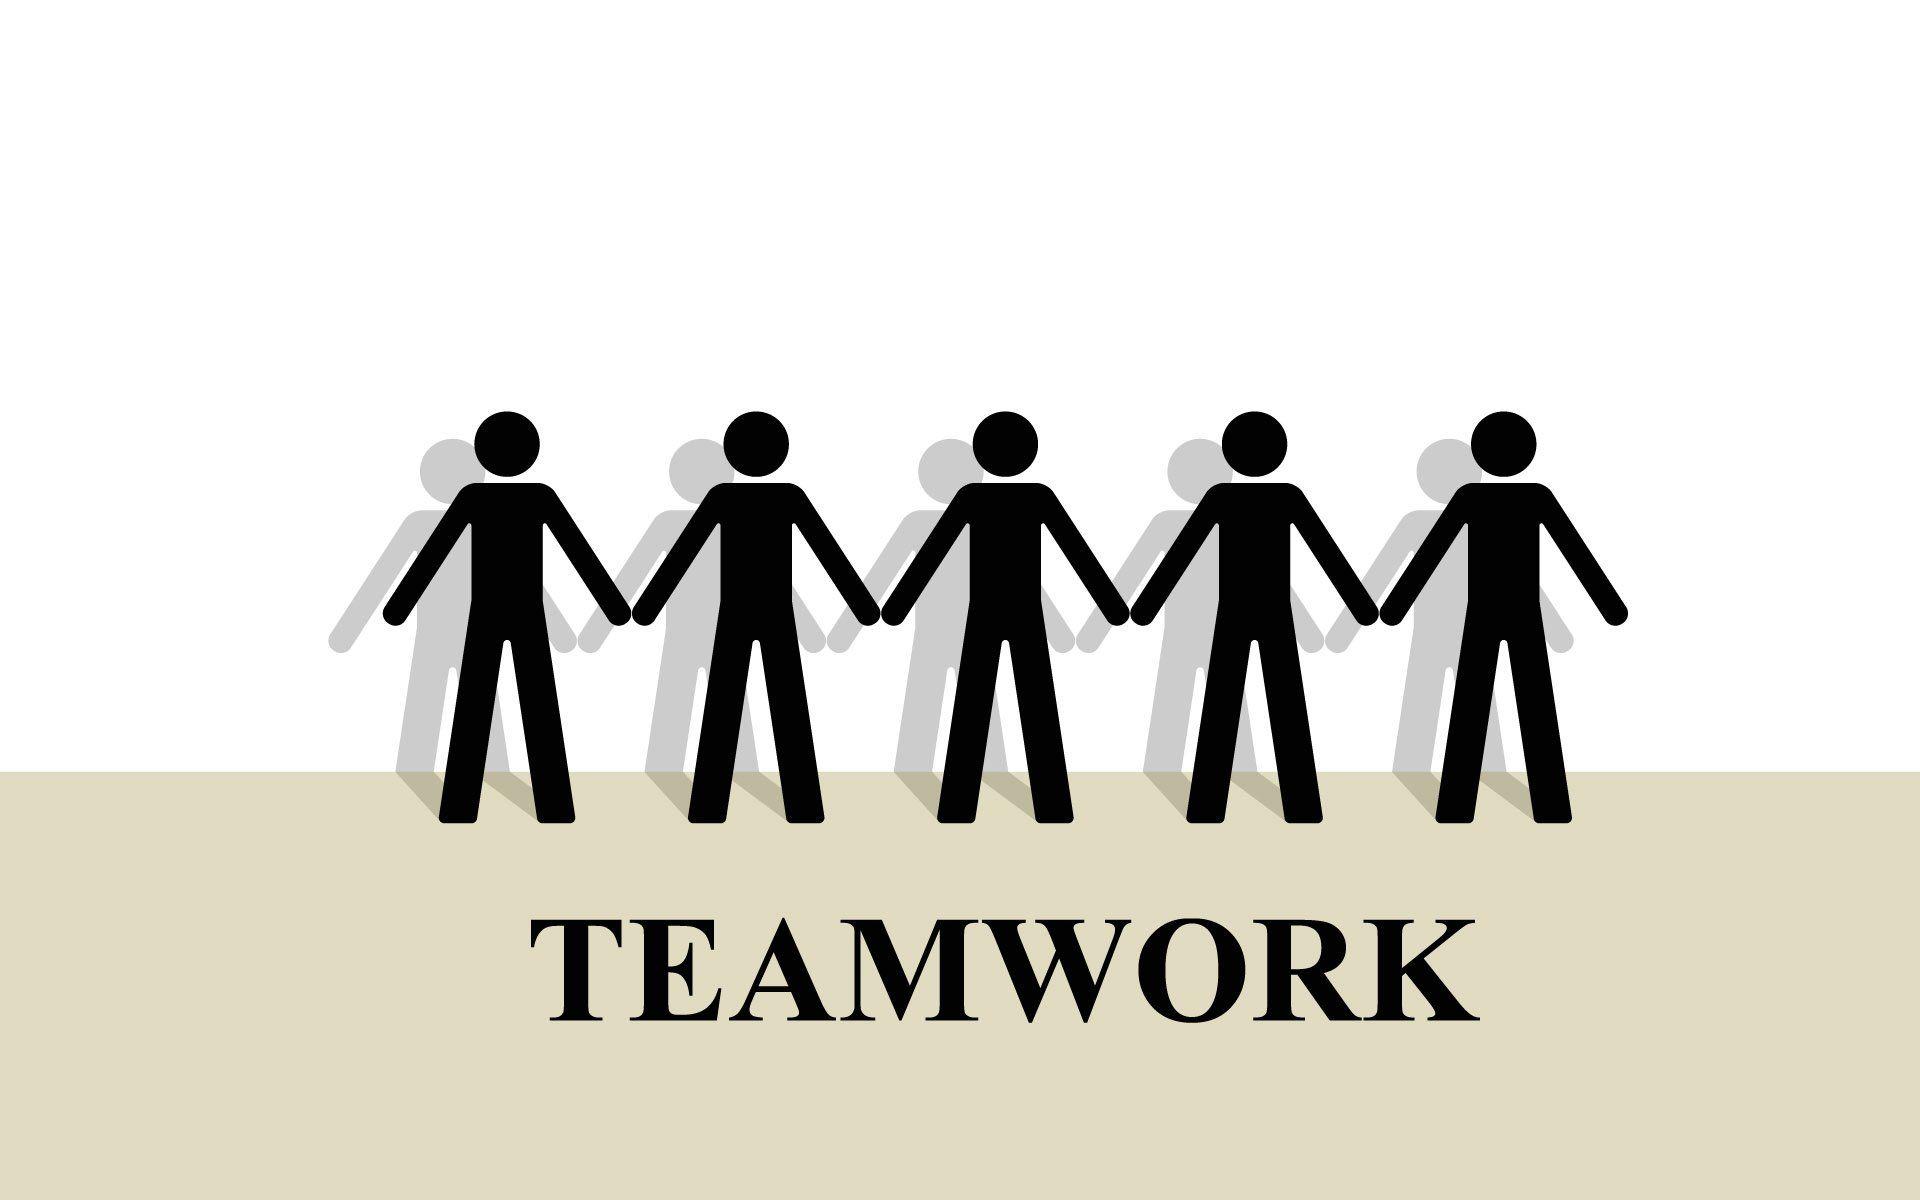 Teamwork wallpaper | 1920x1200 | 20830 | WallpaperUP